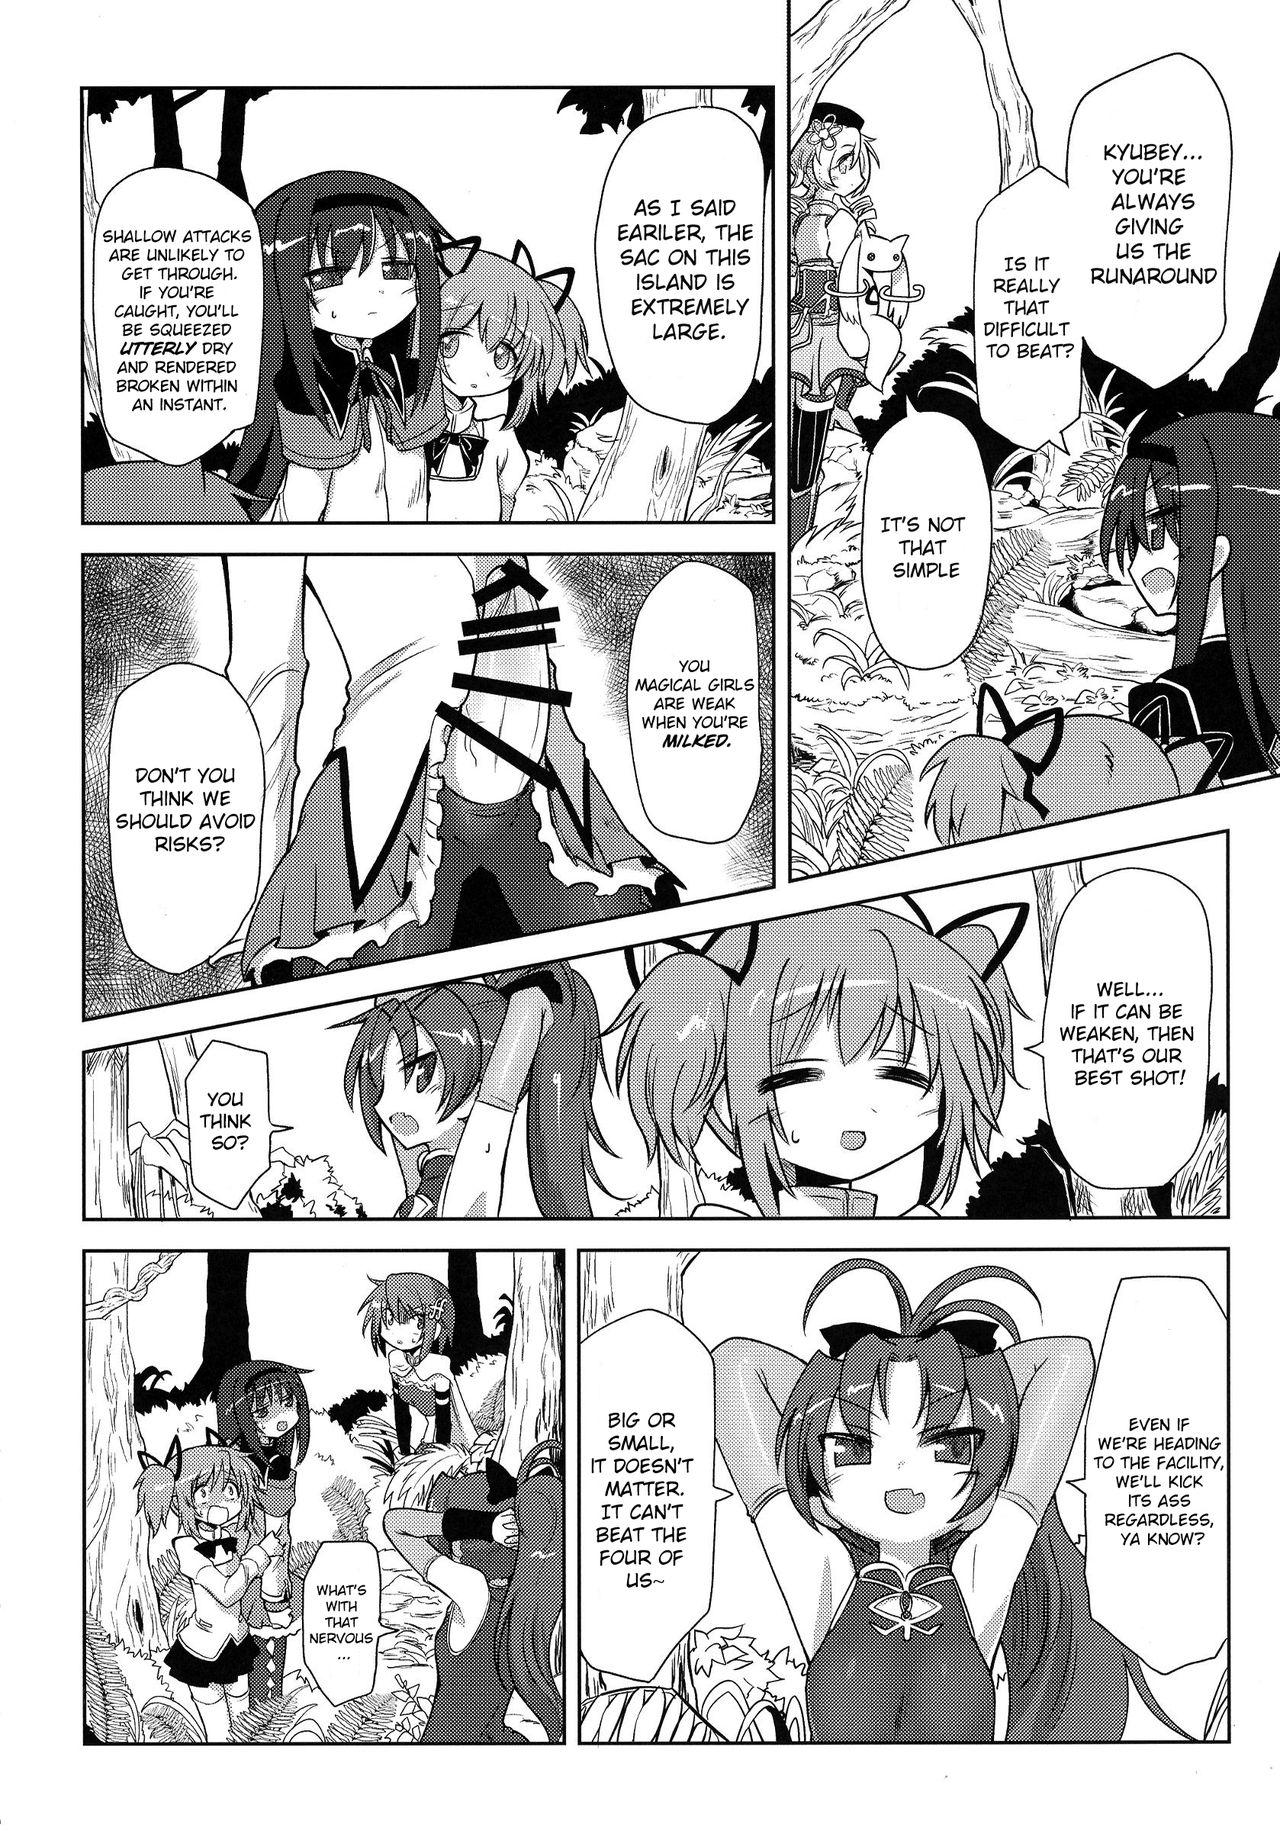 Oriental Fellatiosaurus VS Mahou Shoujo Zenpen - Puella magi madoka magica Bitch - Page 8